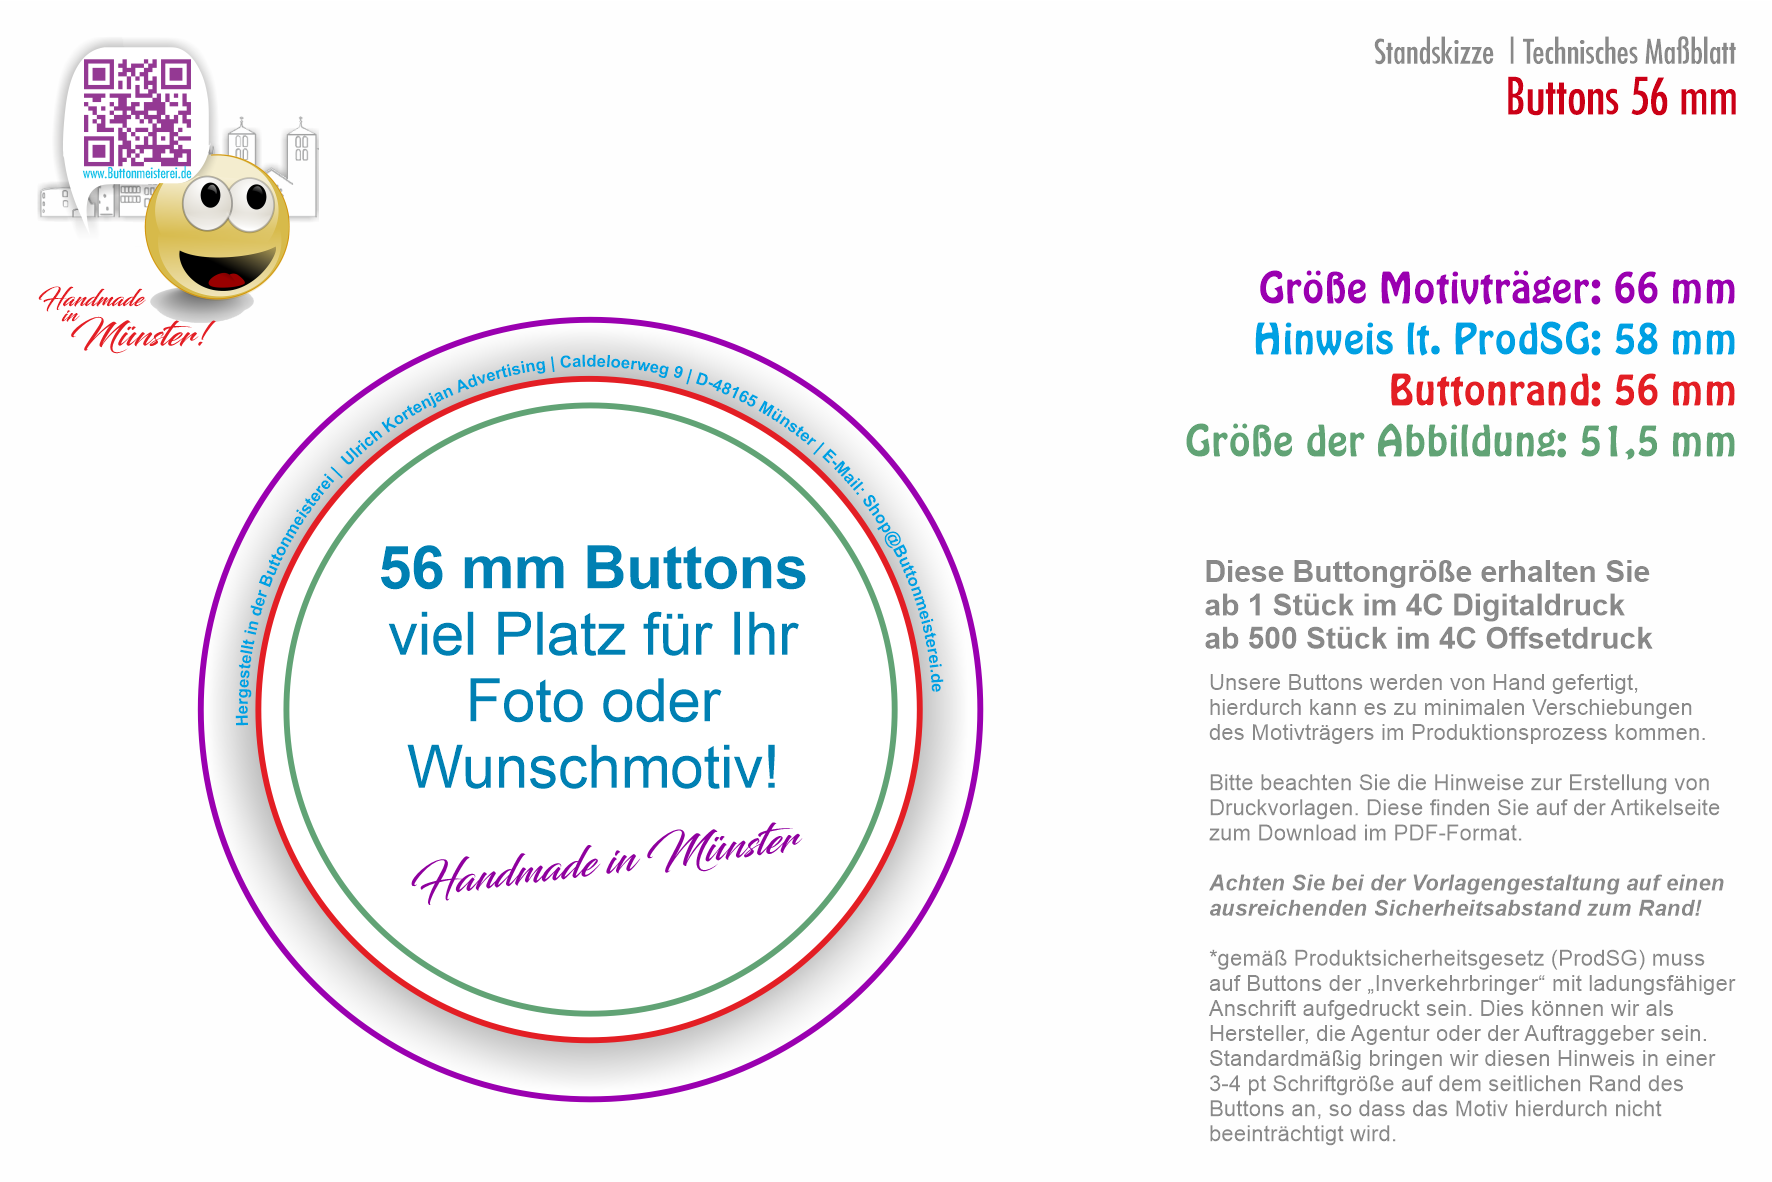 56 mm Button mit Make up Spiegel - Der beliebteste Button | individuell gestaltbar 